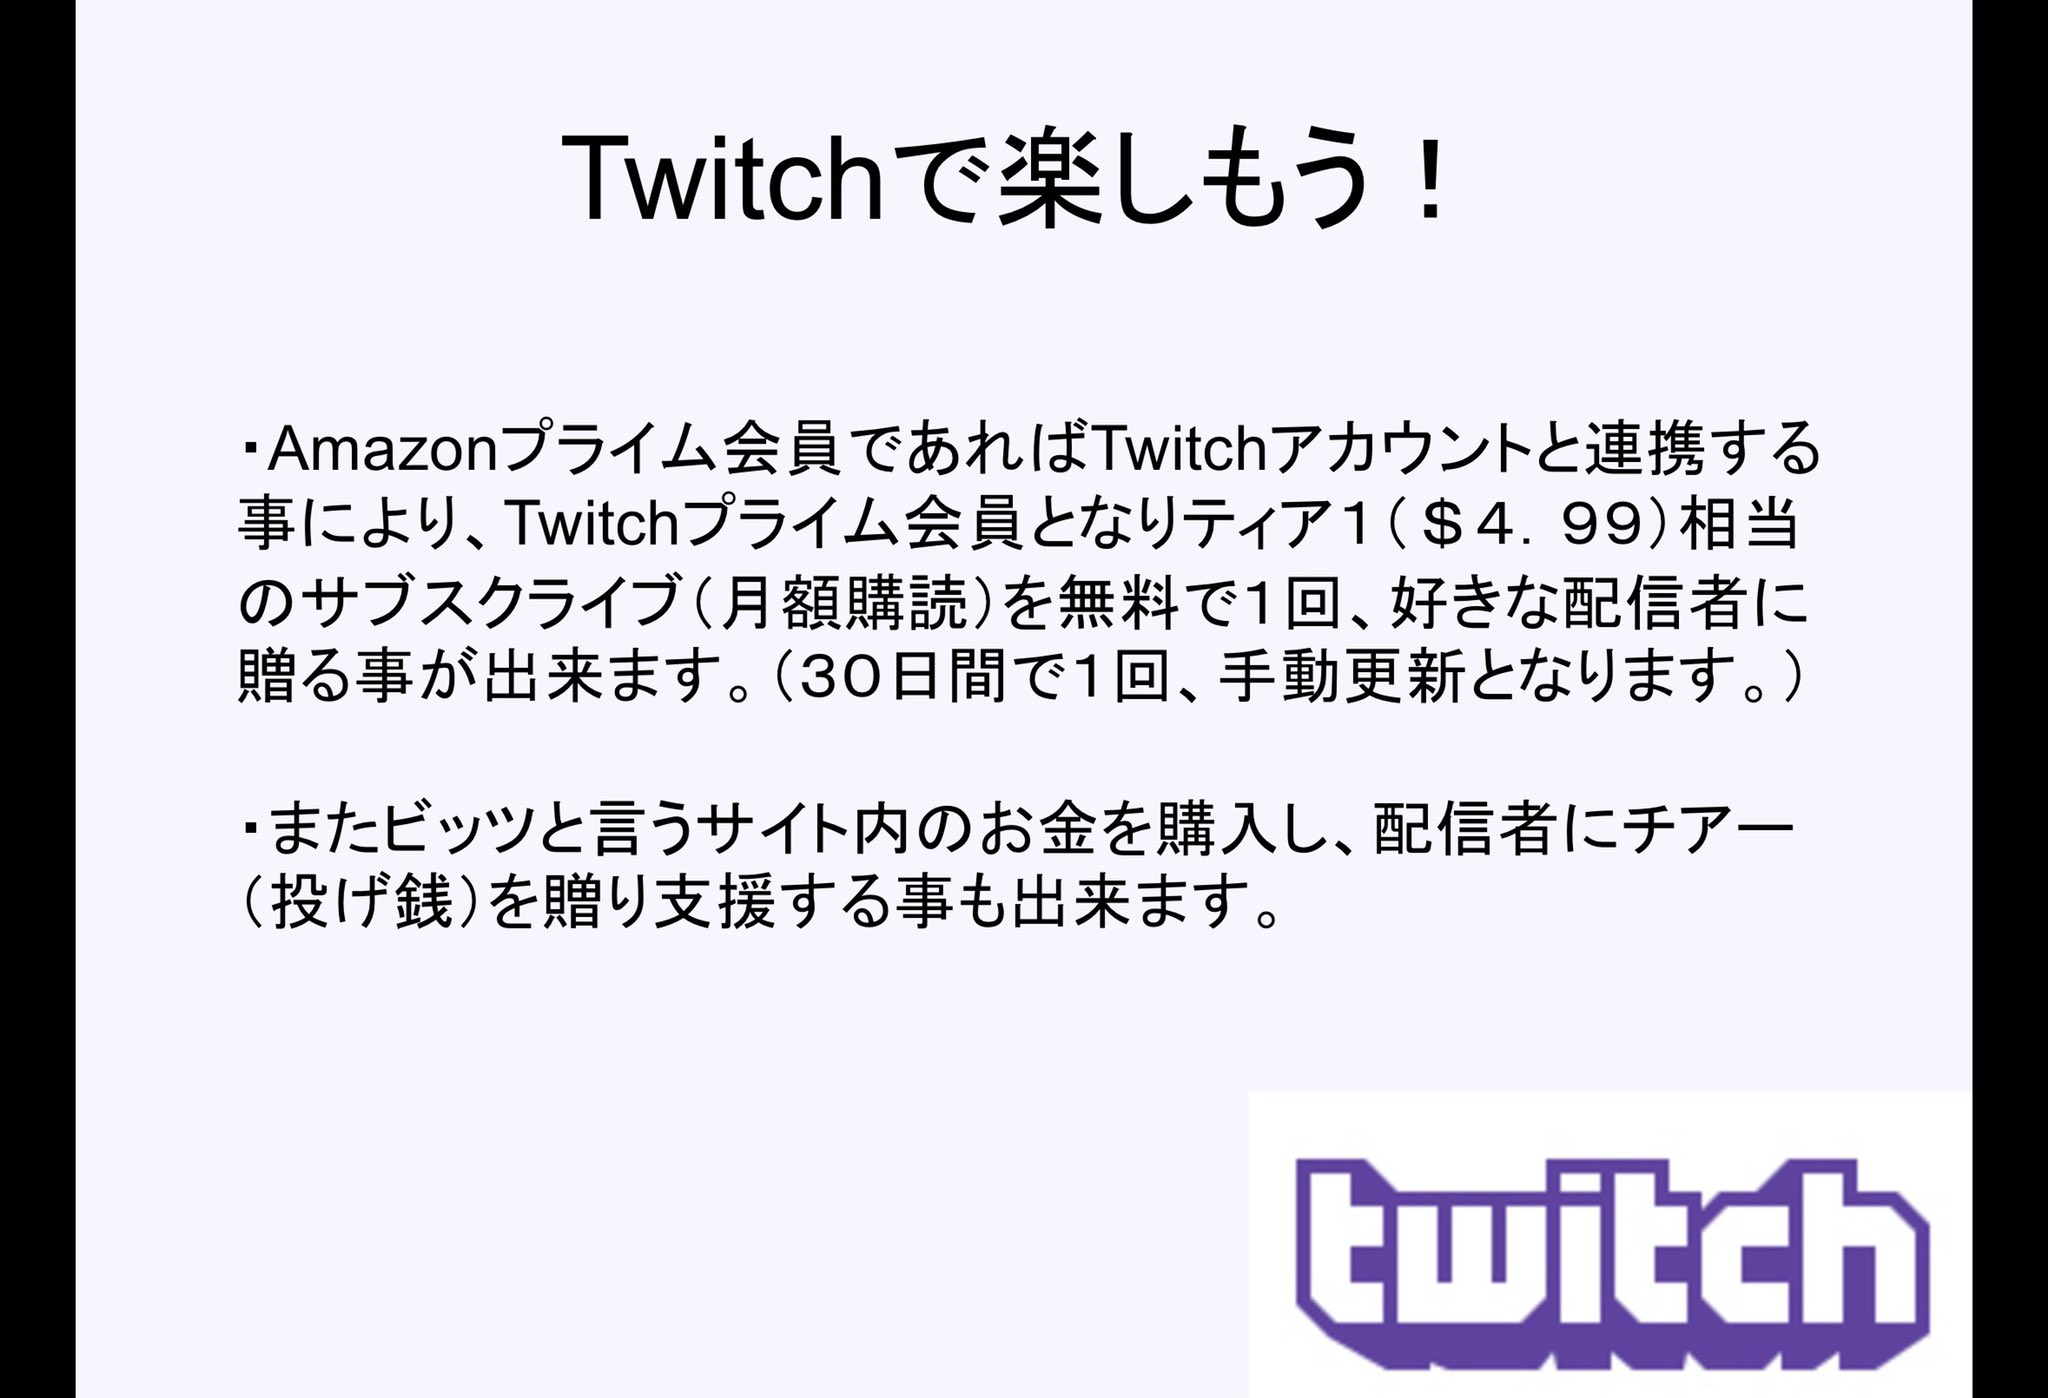 Miz Htu On Twitch ゲーム配信に特化したライブ配信プラットフォーム Twitchをもっともっと知ってもらいたい 日本国内ではyoutubeが圧倒的なシェアを 誇っていますが Twitchだって楽しいですよ たくさんの方にtwitchを知って頂き 視聴者に